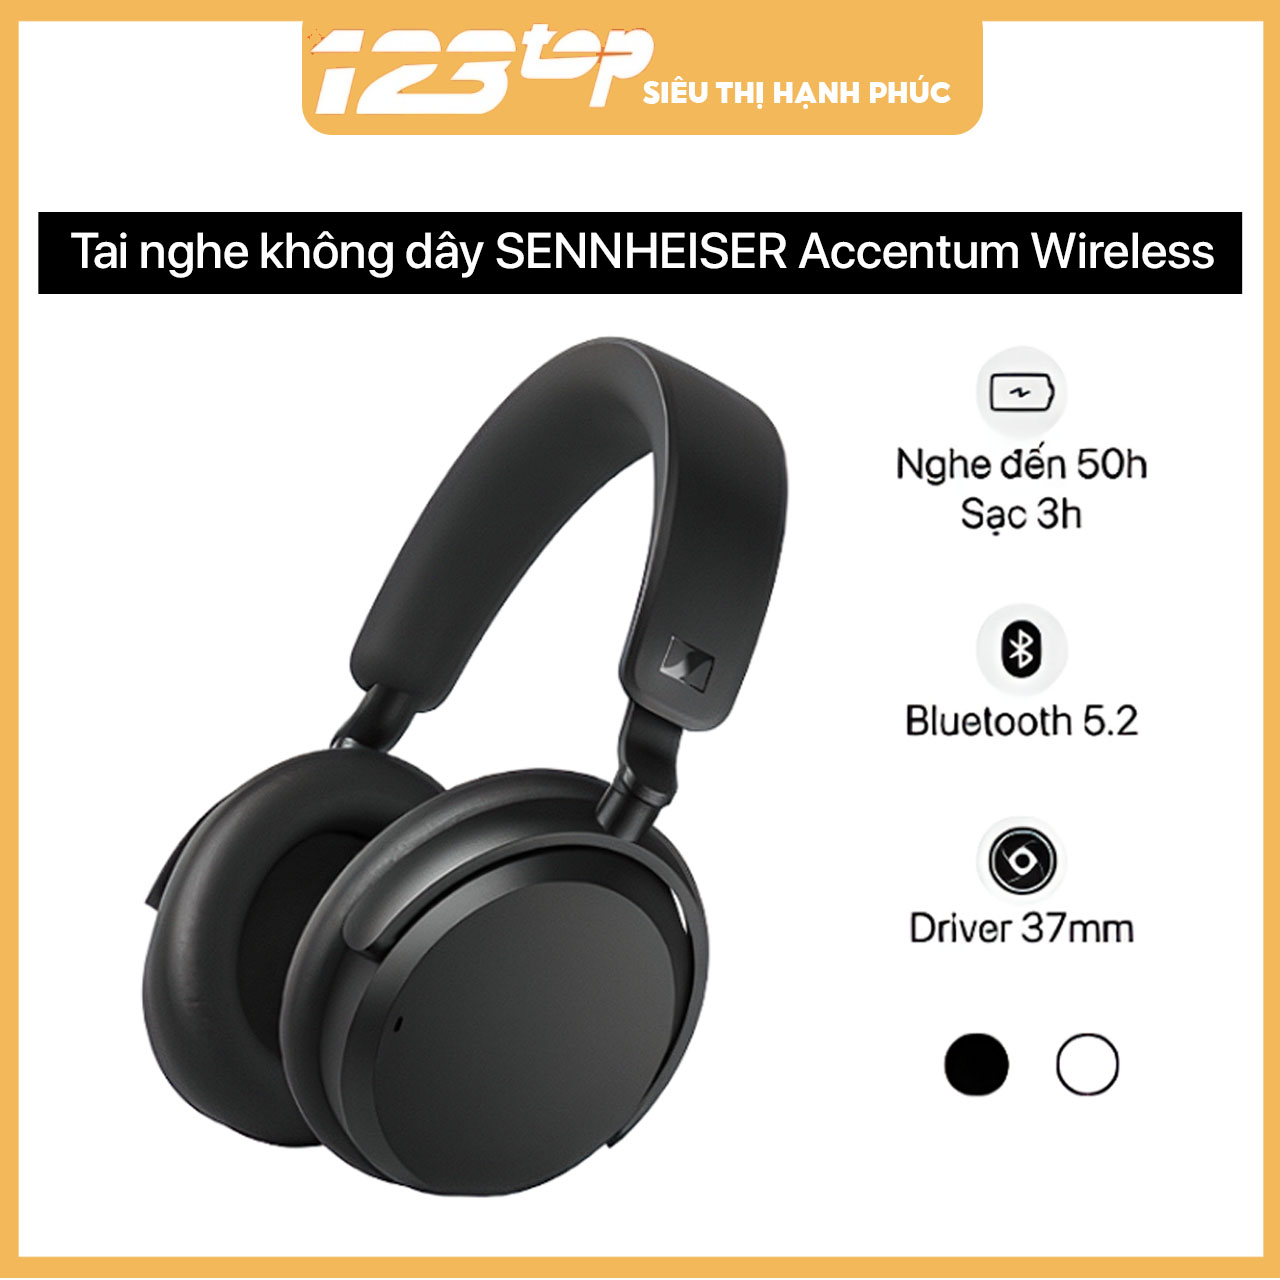 Tai nghe không dây SENNHEISER Accentum Wireless thương hiệu từ Đức